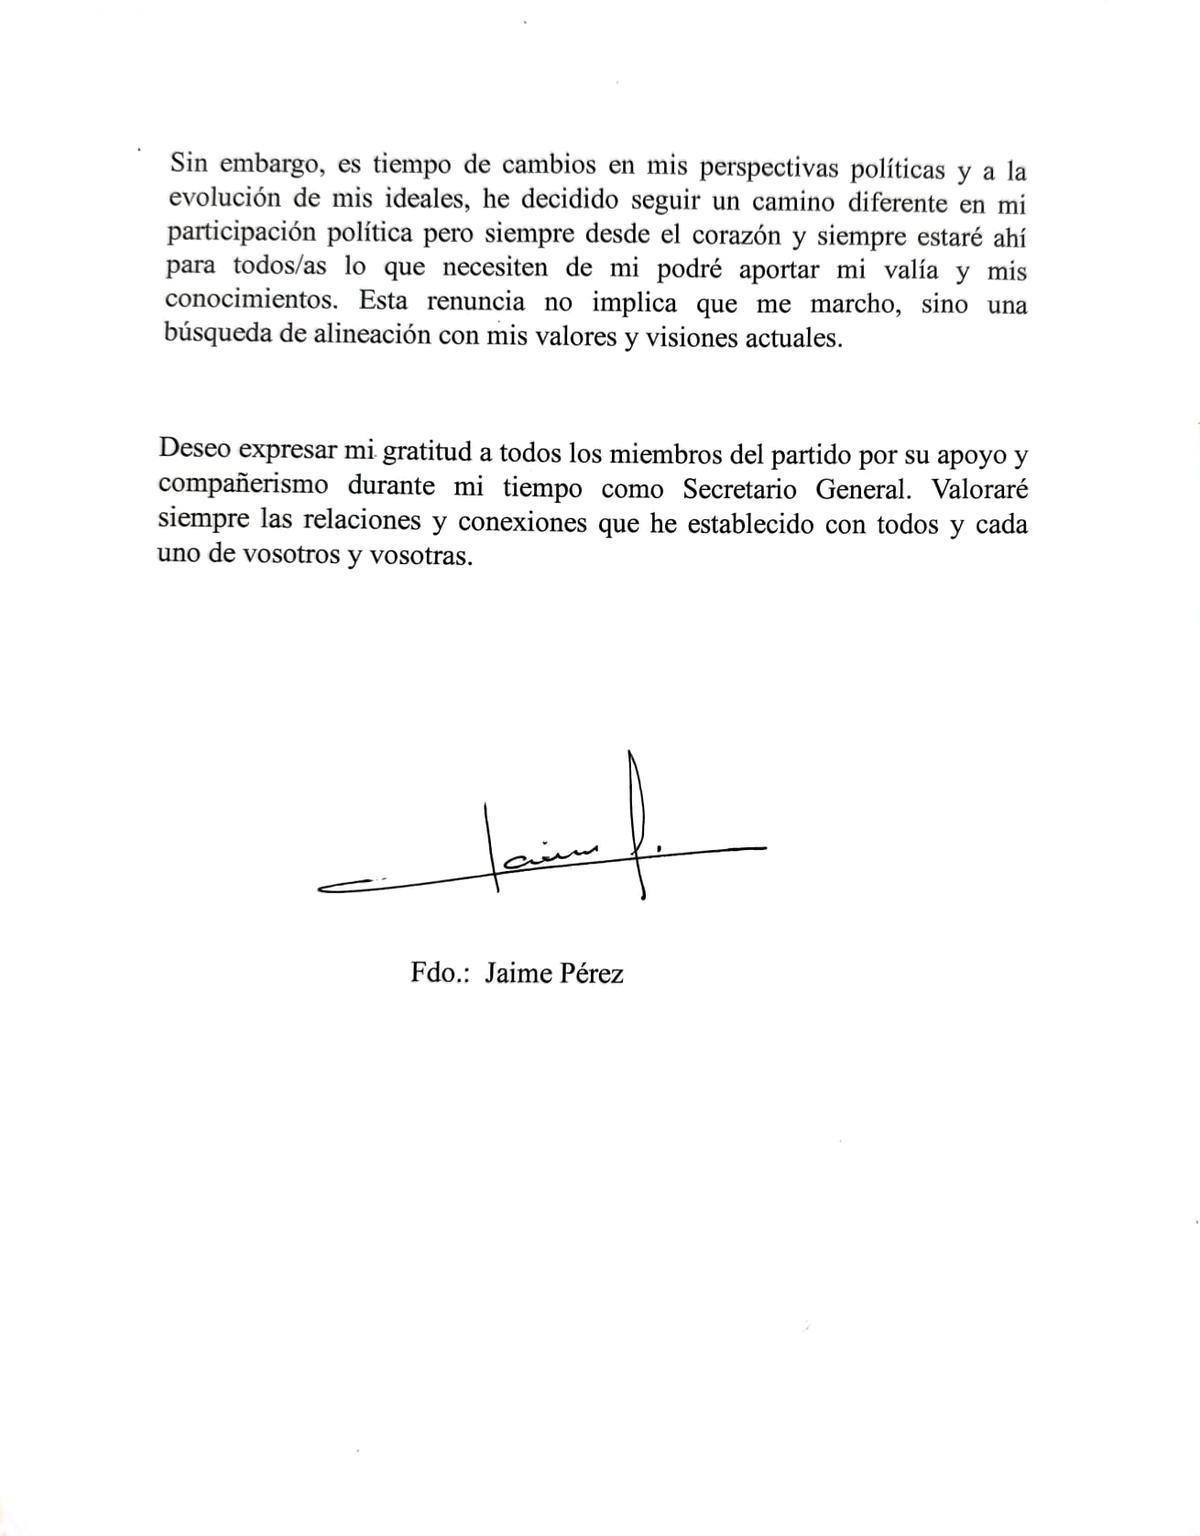 Carta de renuncia de Jaime Pérez